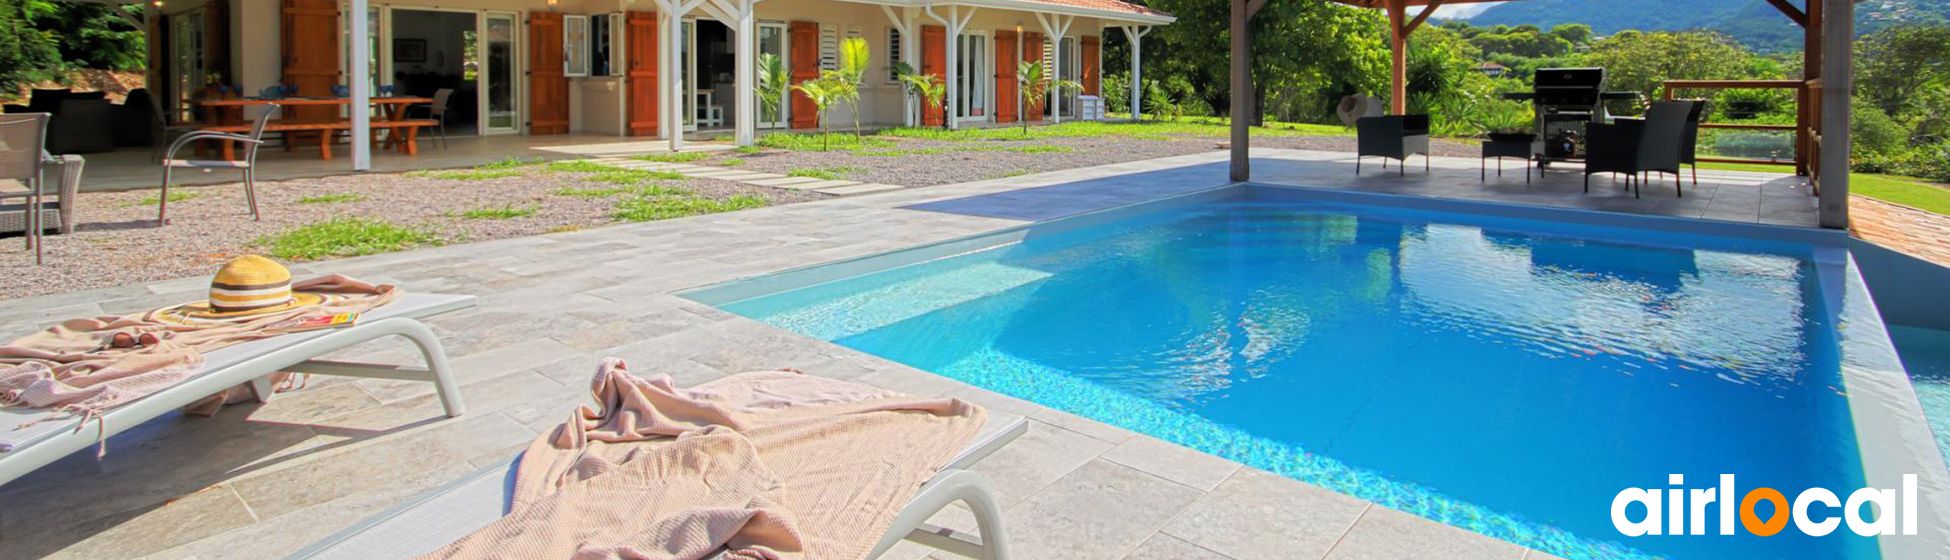 Location maison vacances avec piscine privée pas cher martinique